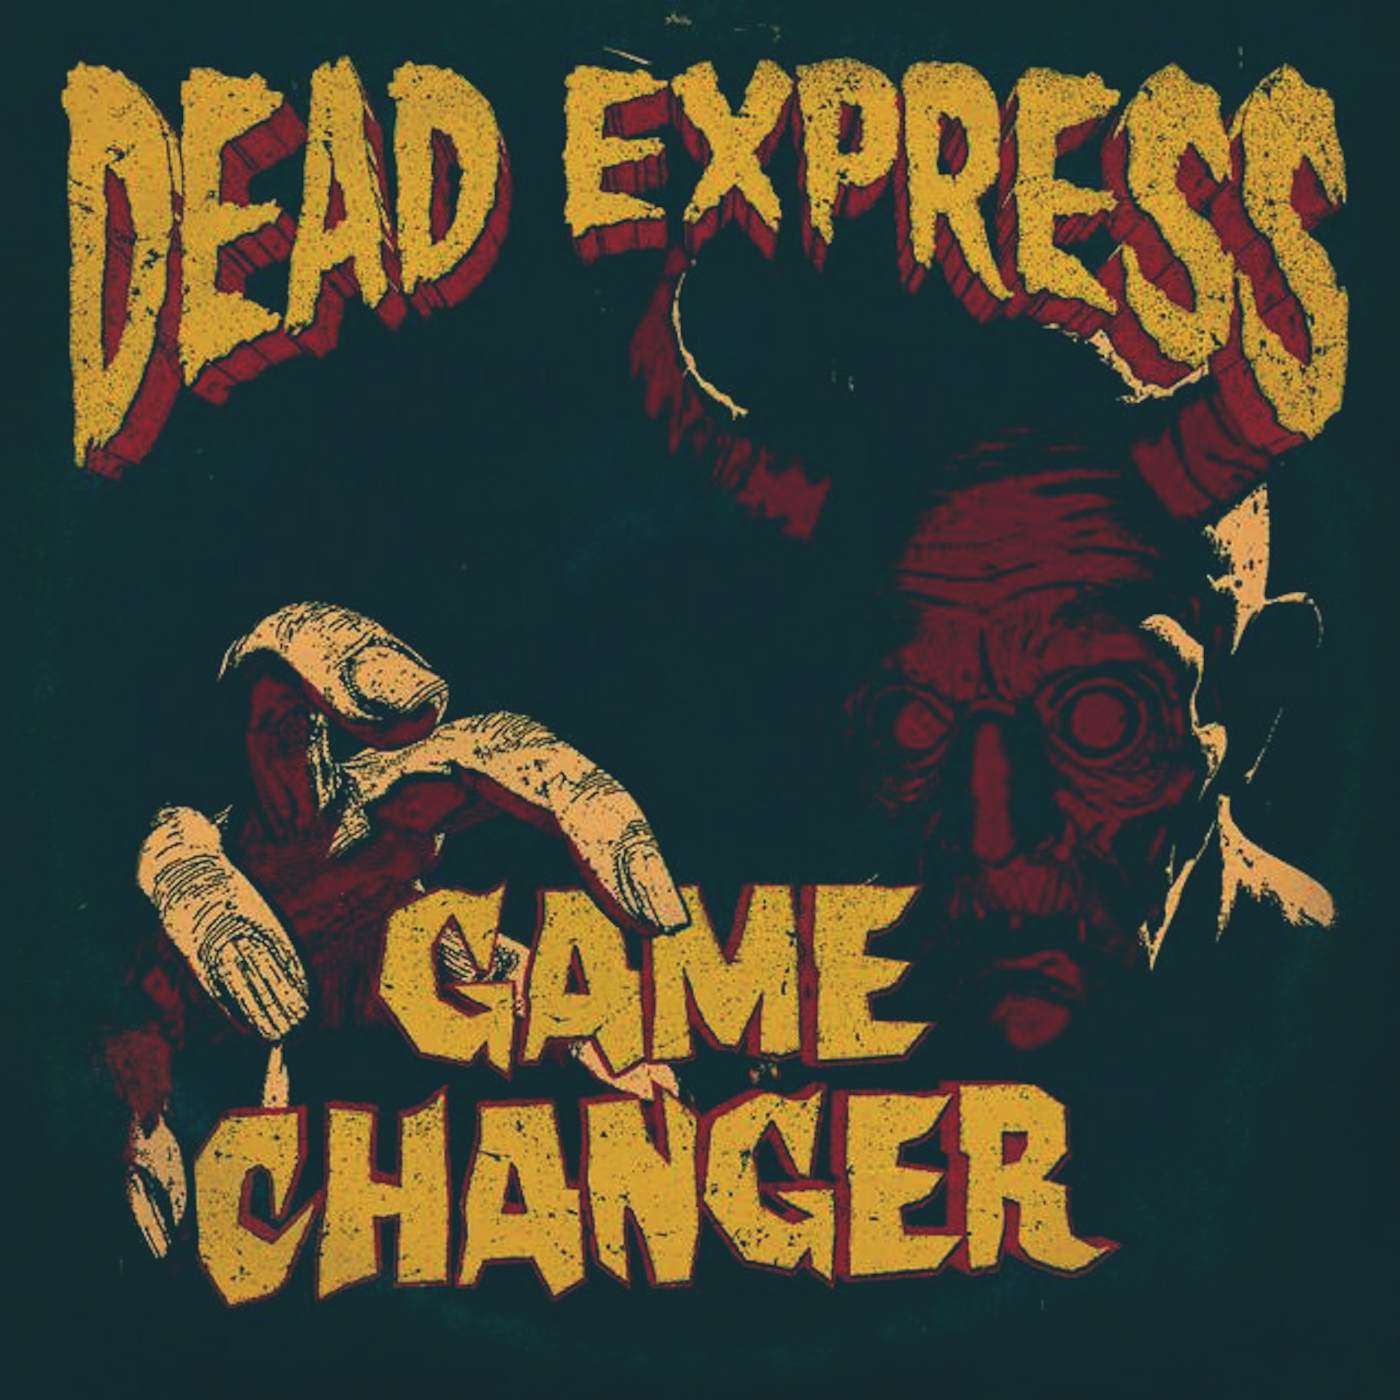 Dead Express